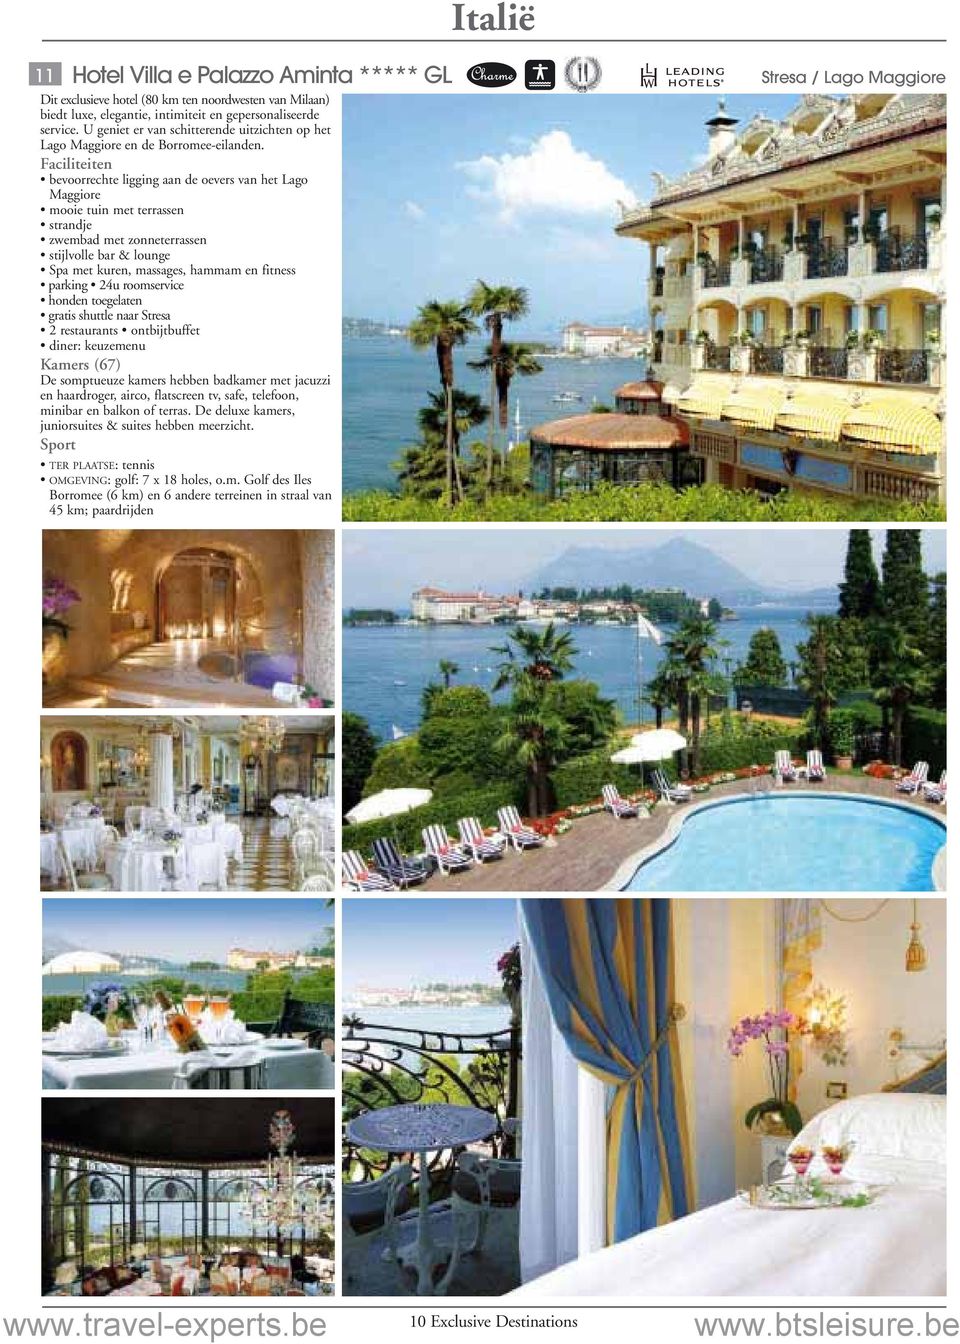 bevoorrechte ligging aan de oevers van het Lago Maggiore mooie tuin met terrassen strandje zwembad met zonneterrassen stijlvolle bar & lounge Spa met kuren, massages, hammam en fitness parking 24u